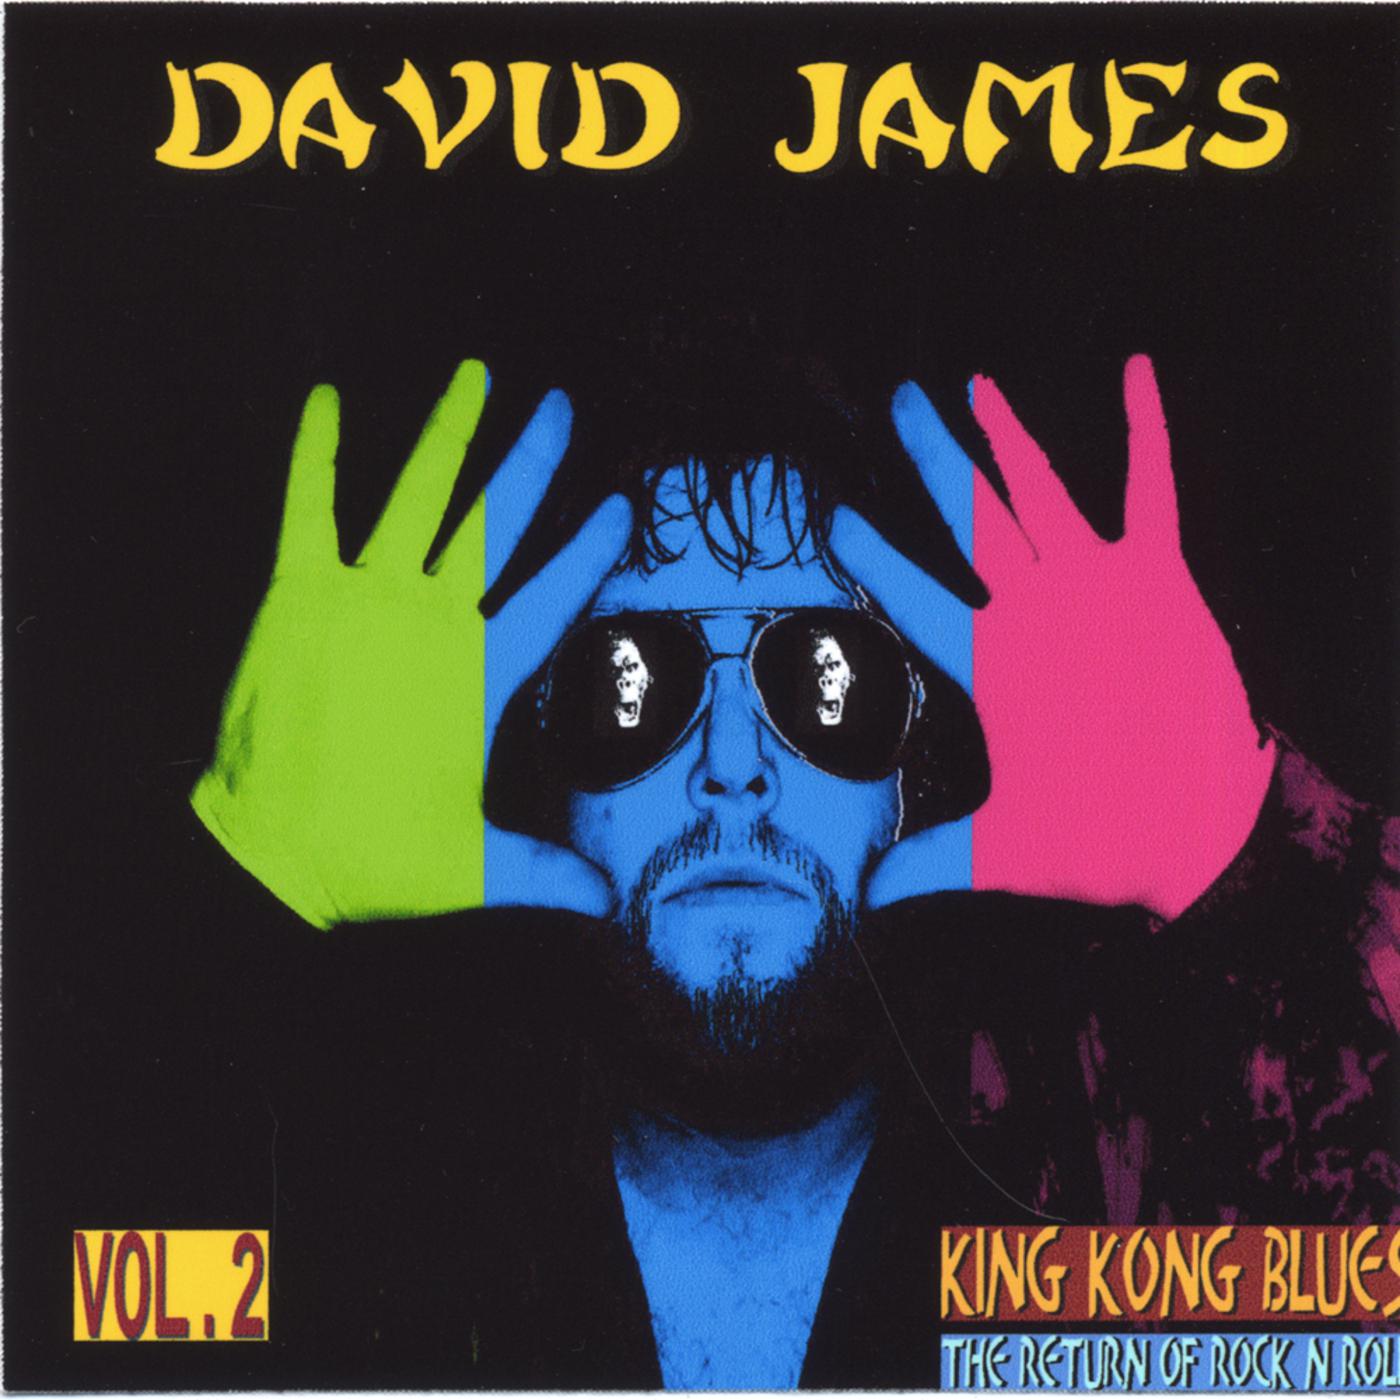 King Kong Blues/The Return of Rock N Roll Vol. 2